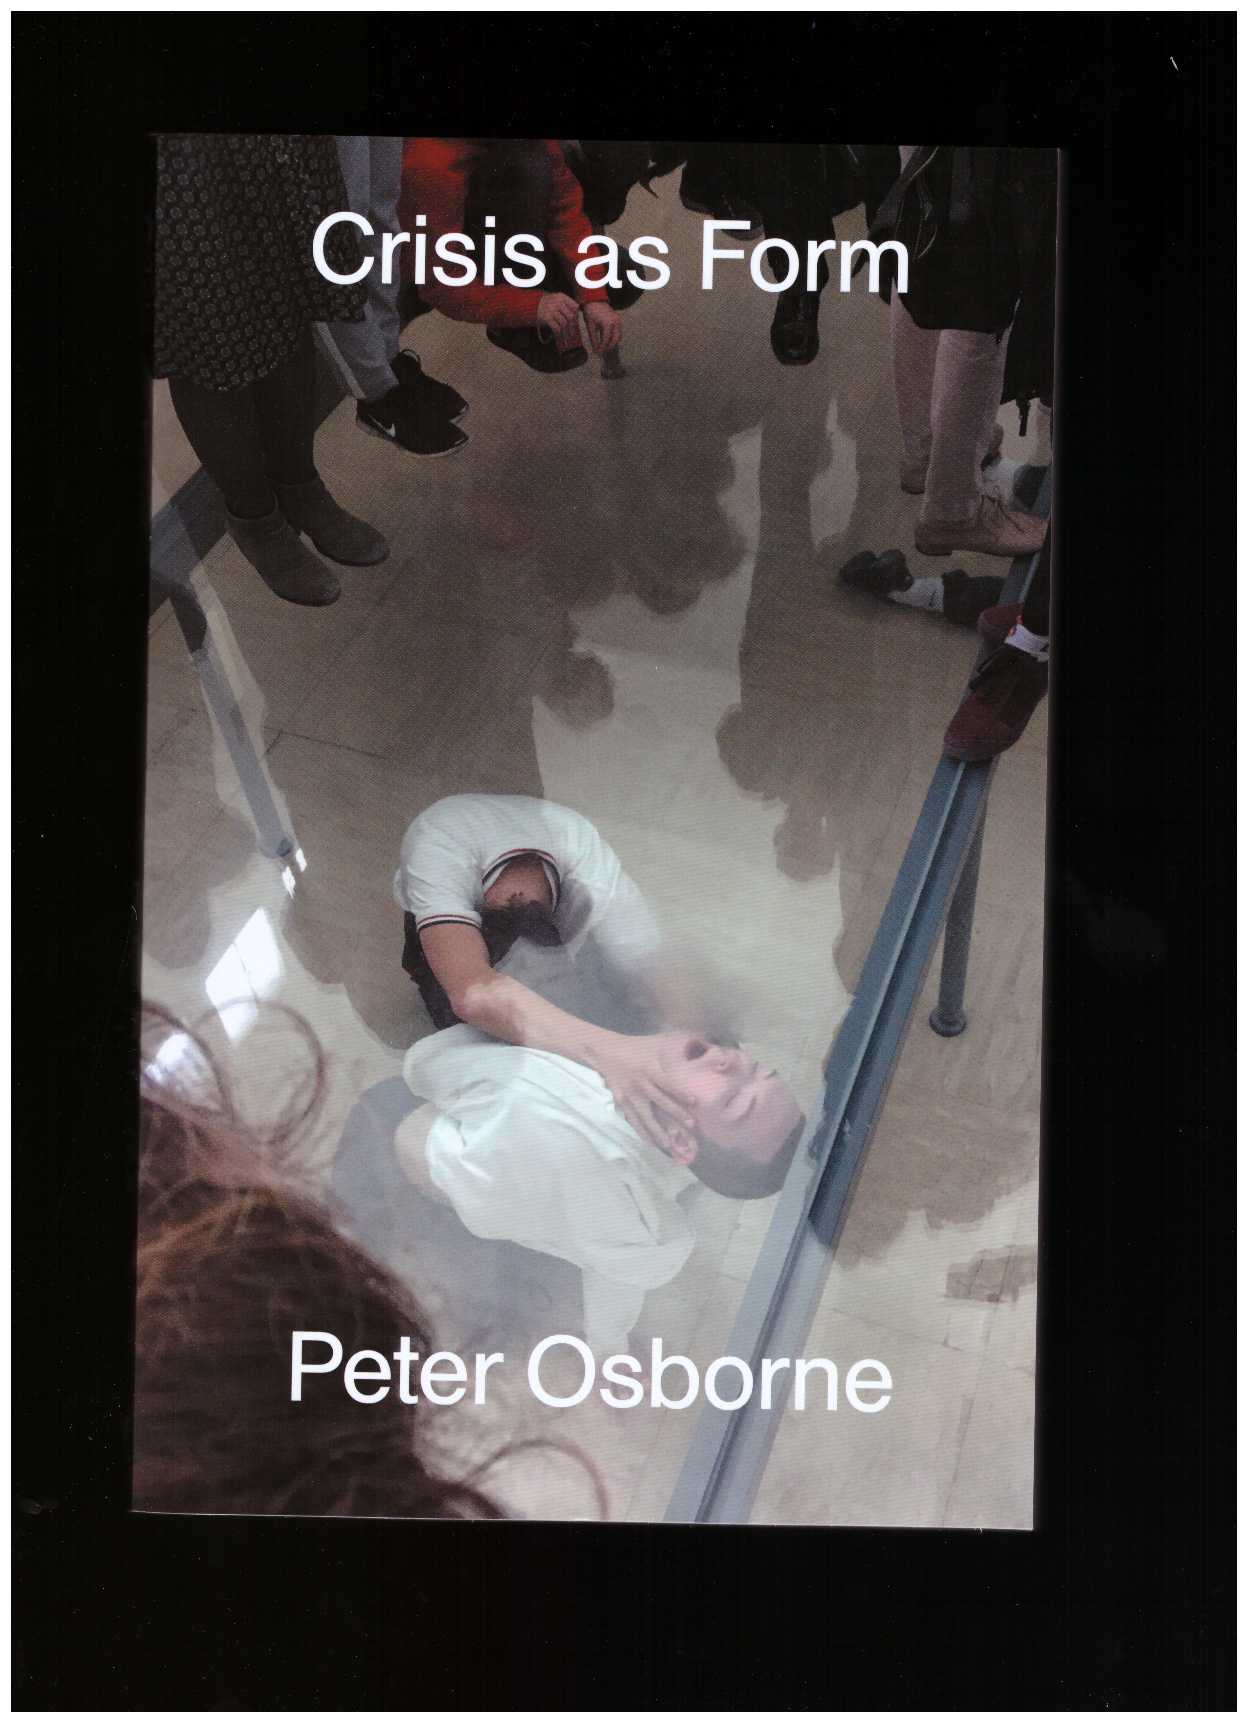 OSBORNE, Peter - Crisis as Form